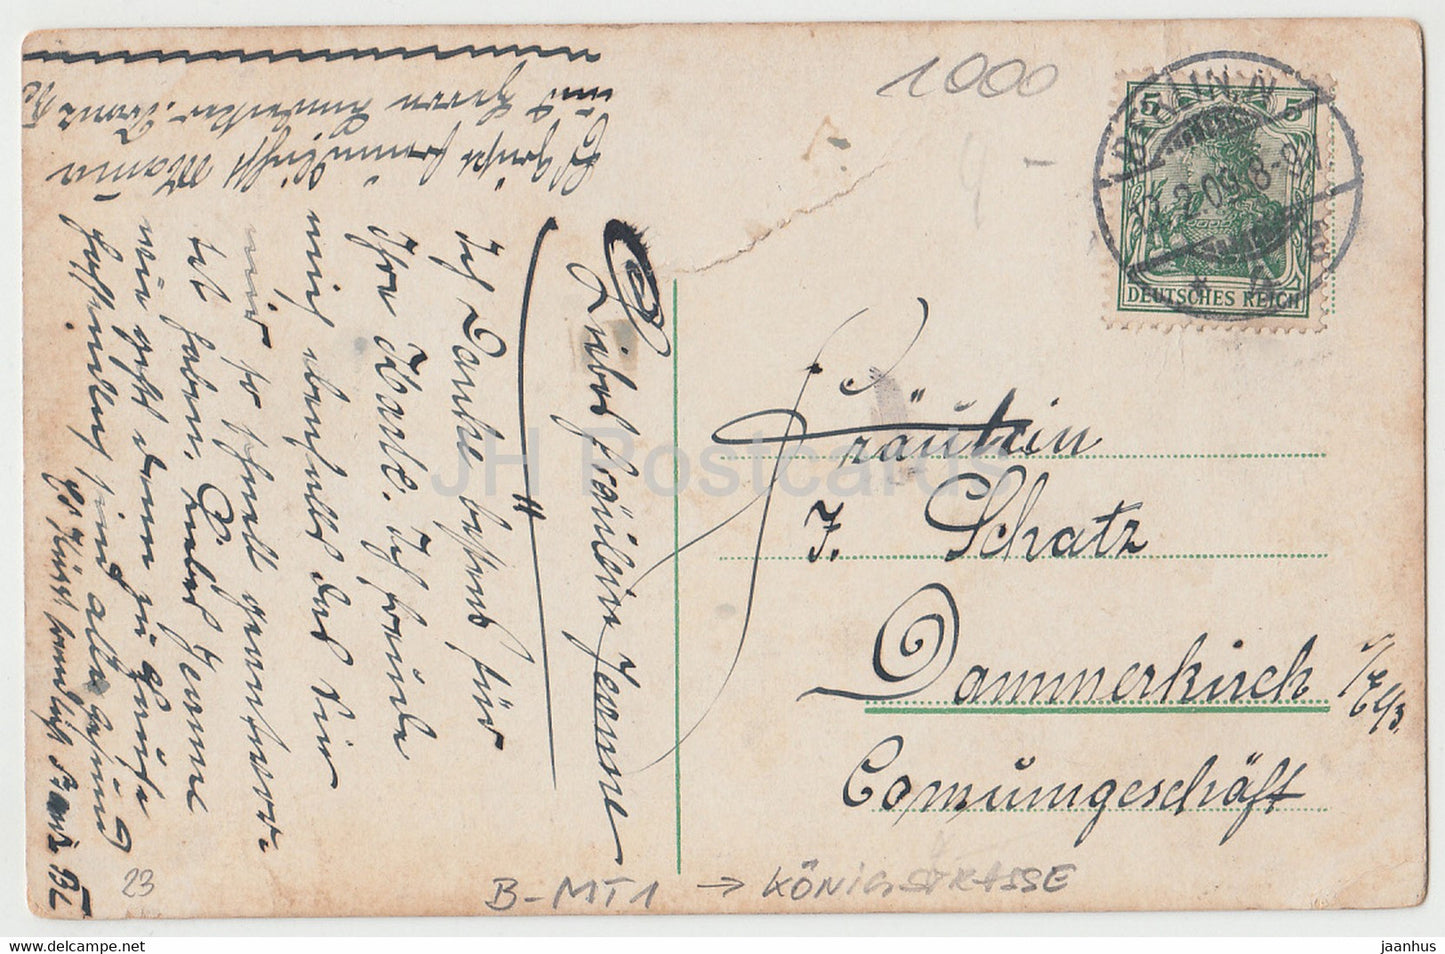 Berlin - Rathaus - Straßenbahn - 5 - alte Postkarte - 1909 - Deutschland - gebraucht